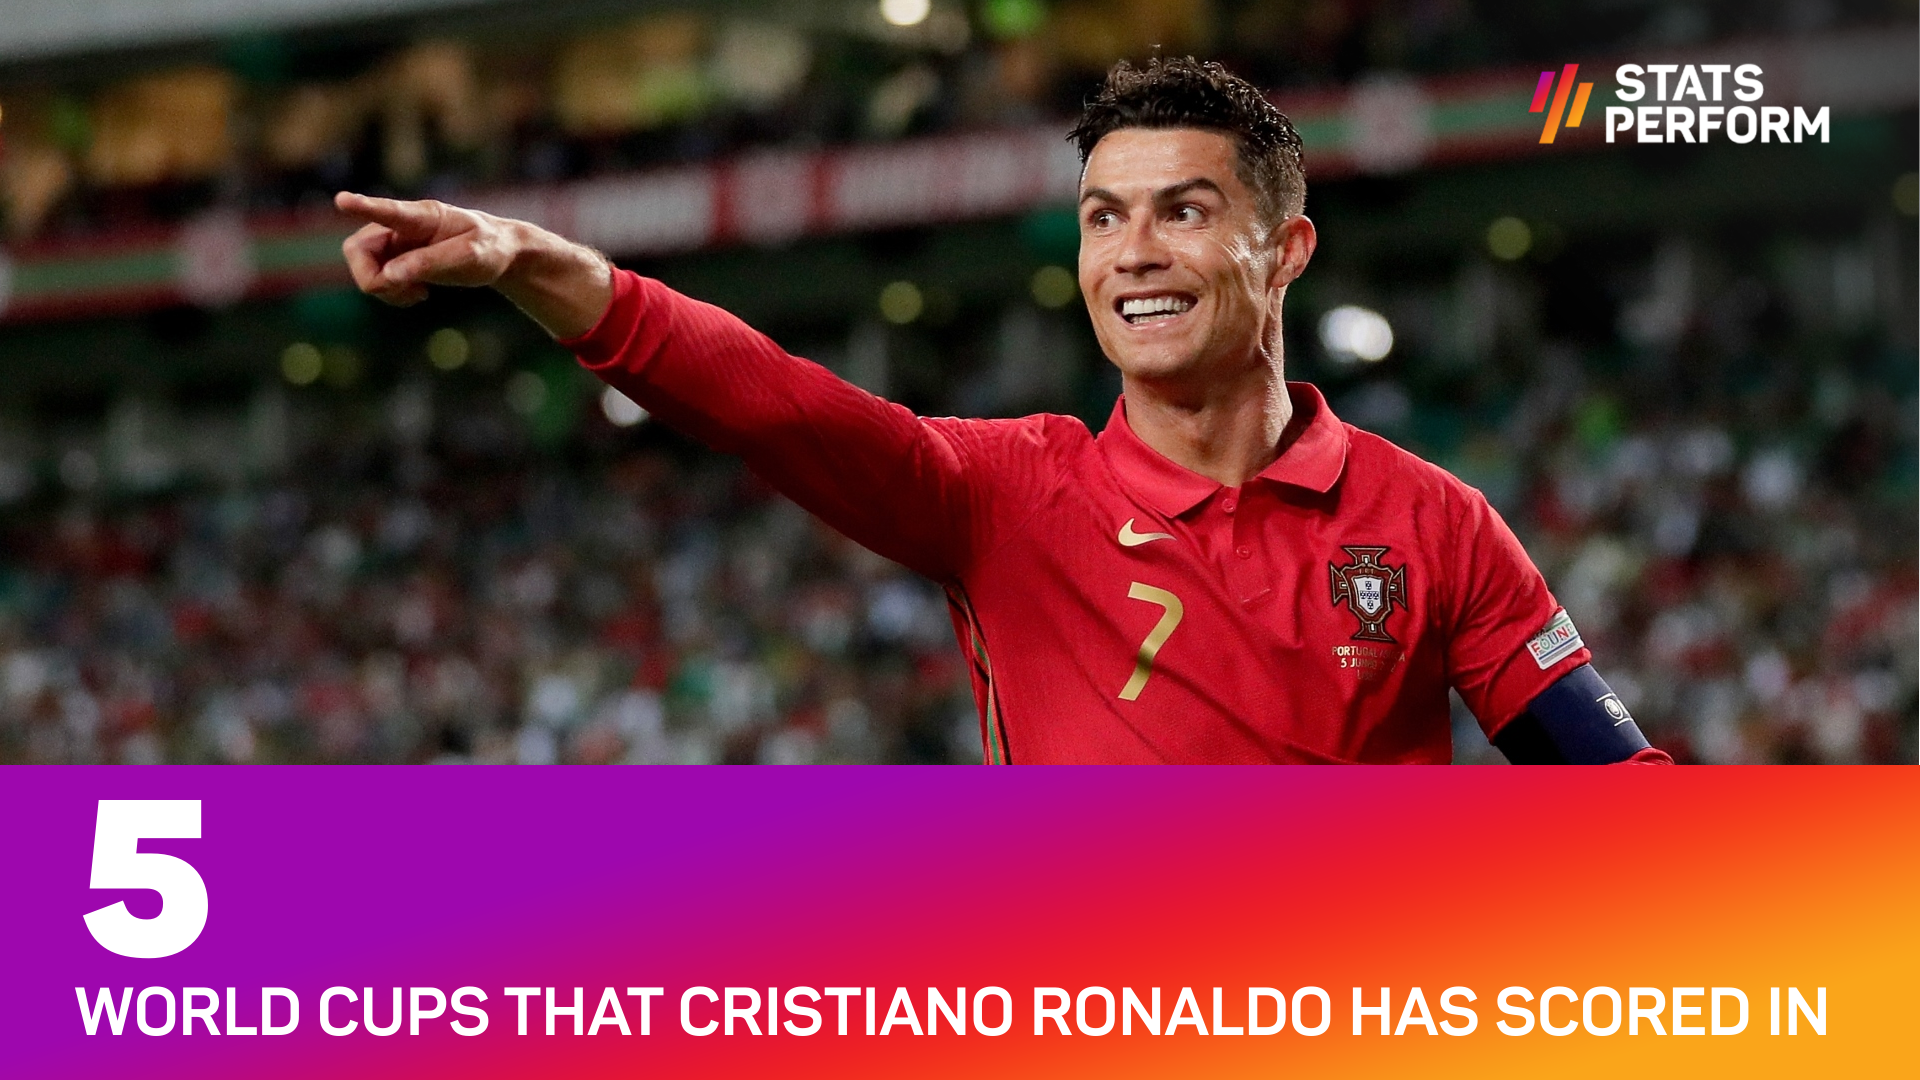 Cristiano Ronaldo has scored in five World Cups